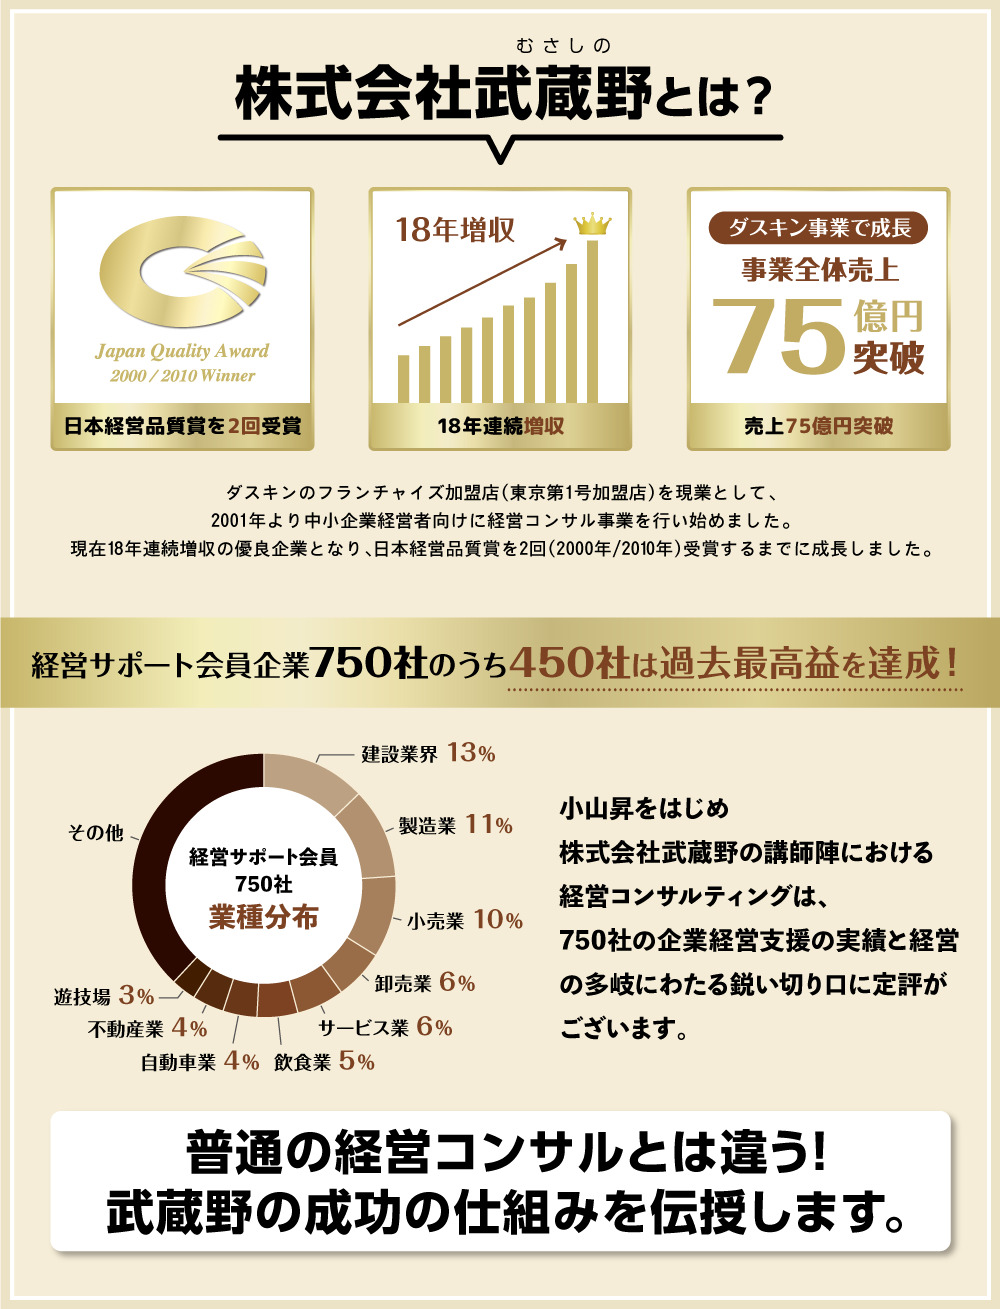 株式会社武蔵野とは？ 指導企業750社のうち400社は過去最高益を達成 普通の経営コンサルとは違う！武蔵野の成功の仕組みを伝授します。